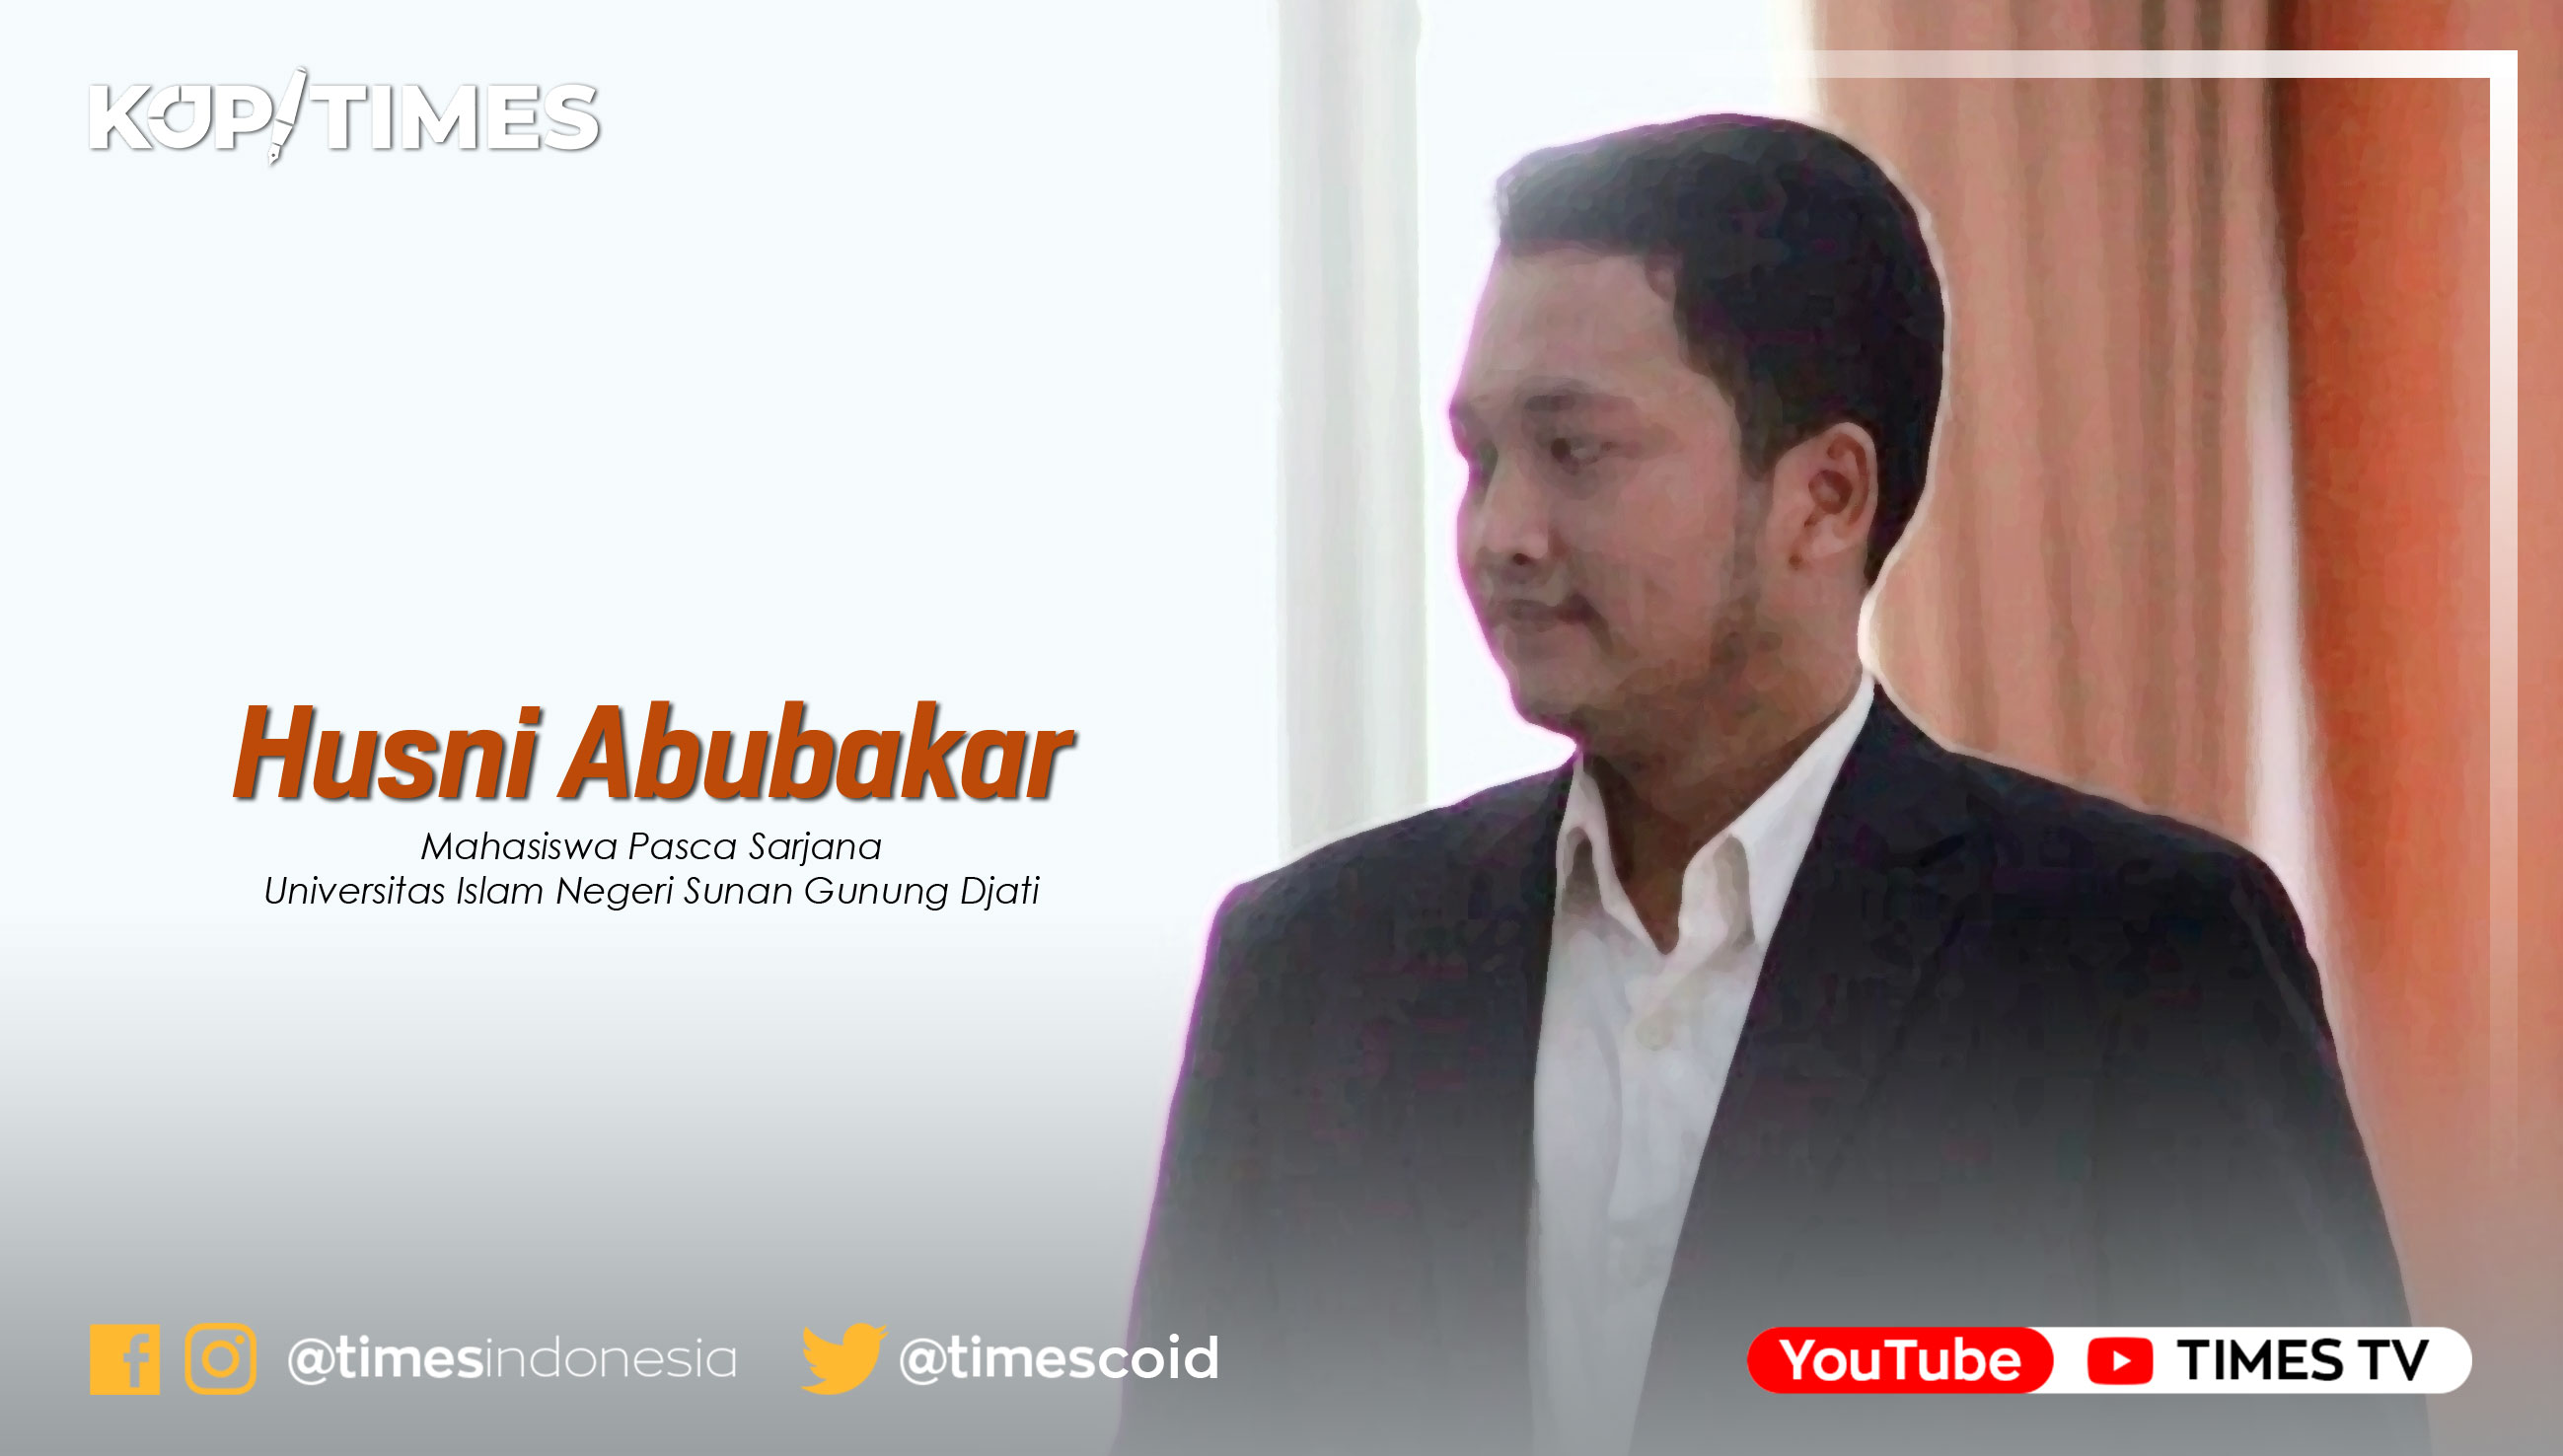 Husni Abubakar, Mahasiswa Pascasarjana Komunikasi Penyiaran Islam Universitas Islam Negeri Sunan Gunung Djati Bandung.